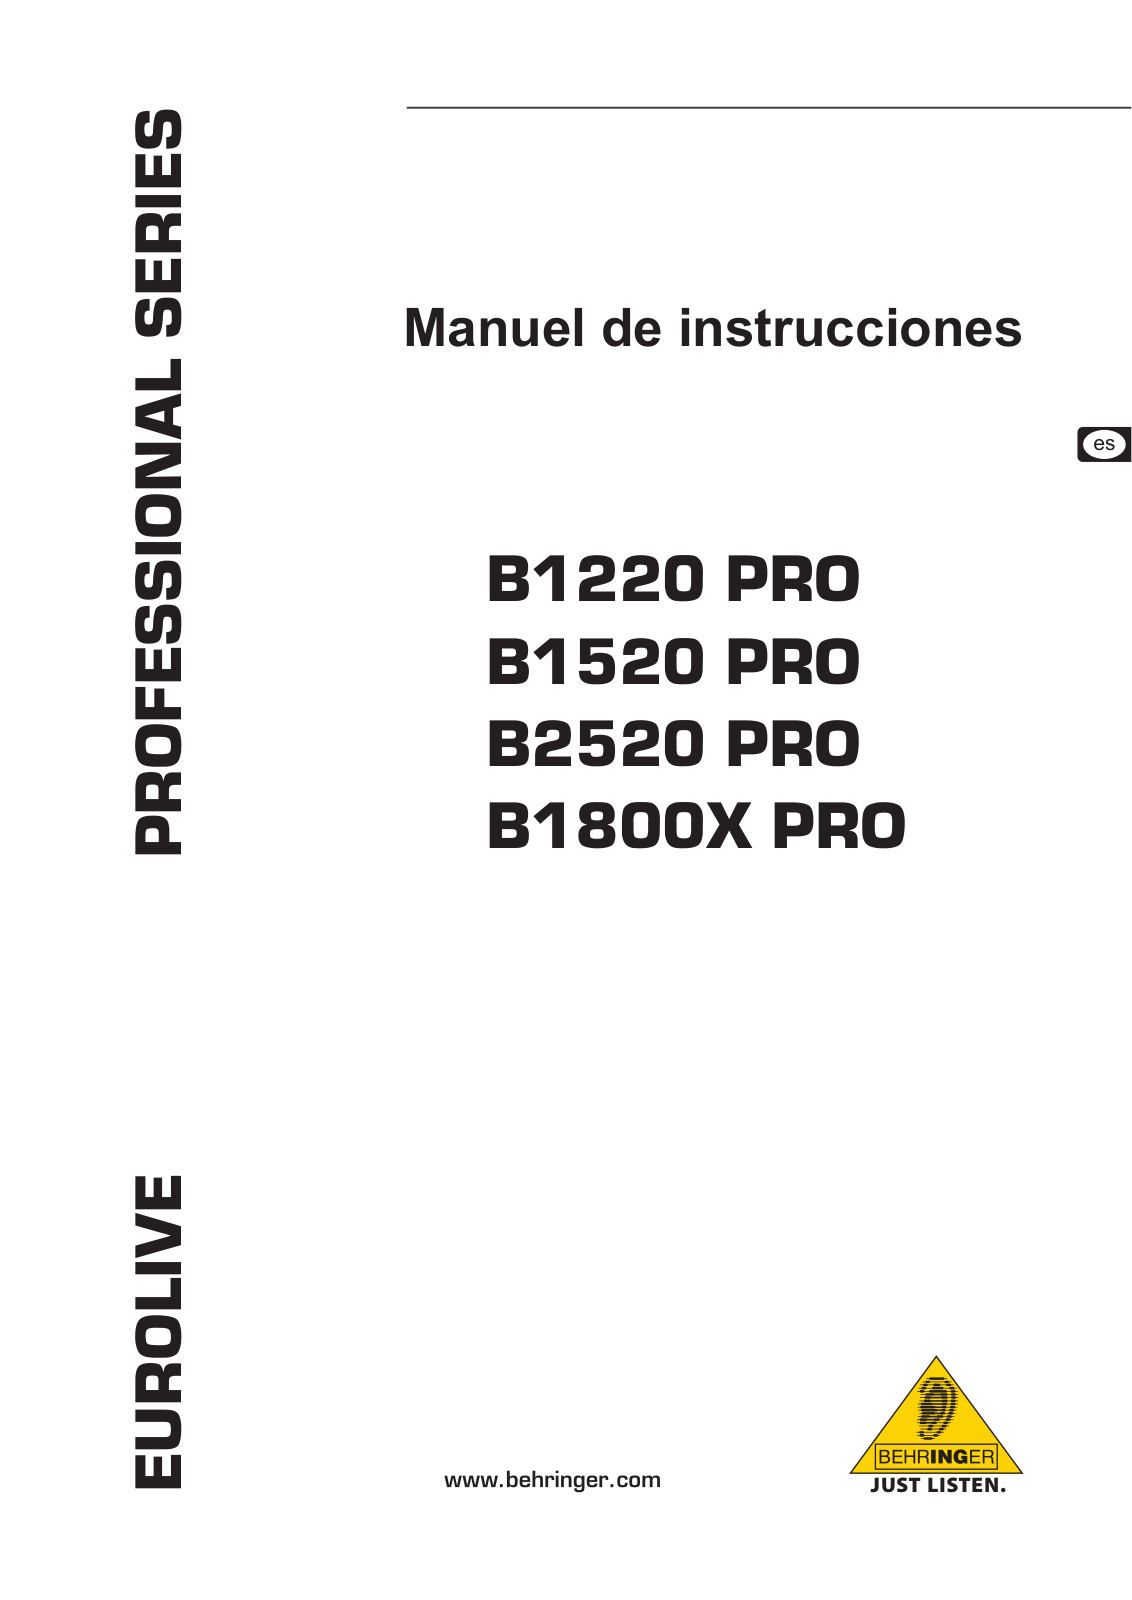 Behringer B1220 PRO, B1800X PRO, B1520 PRO, B2520 PRO Manual